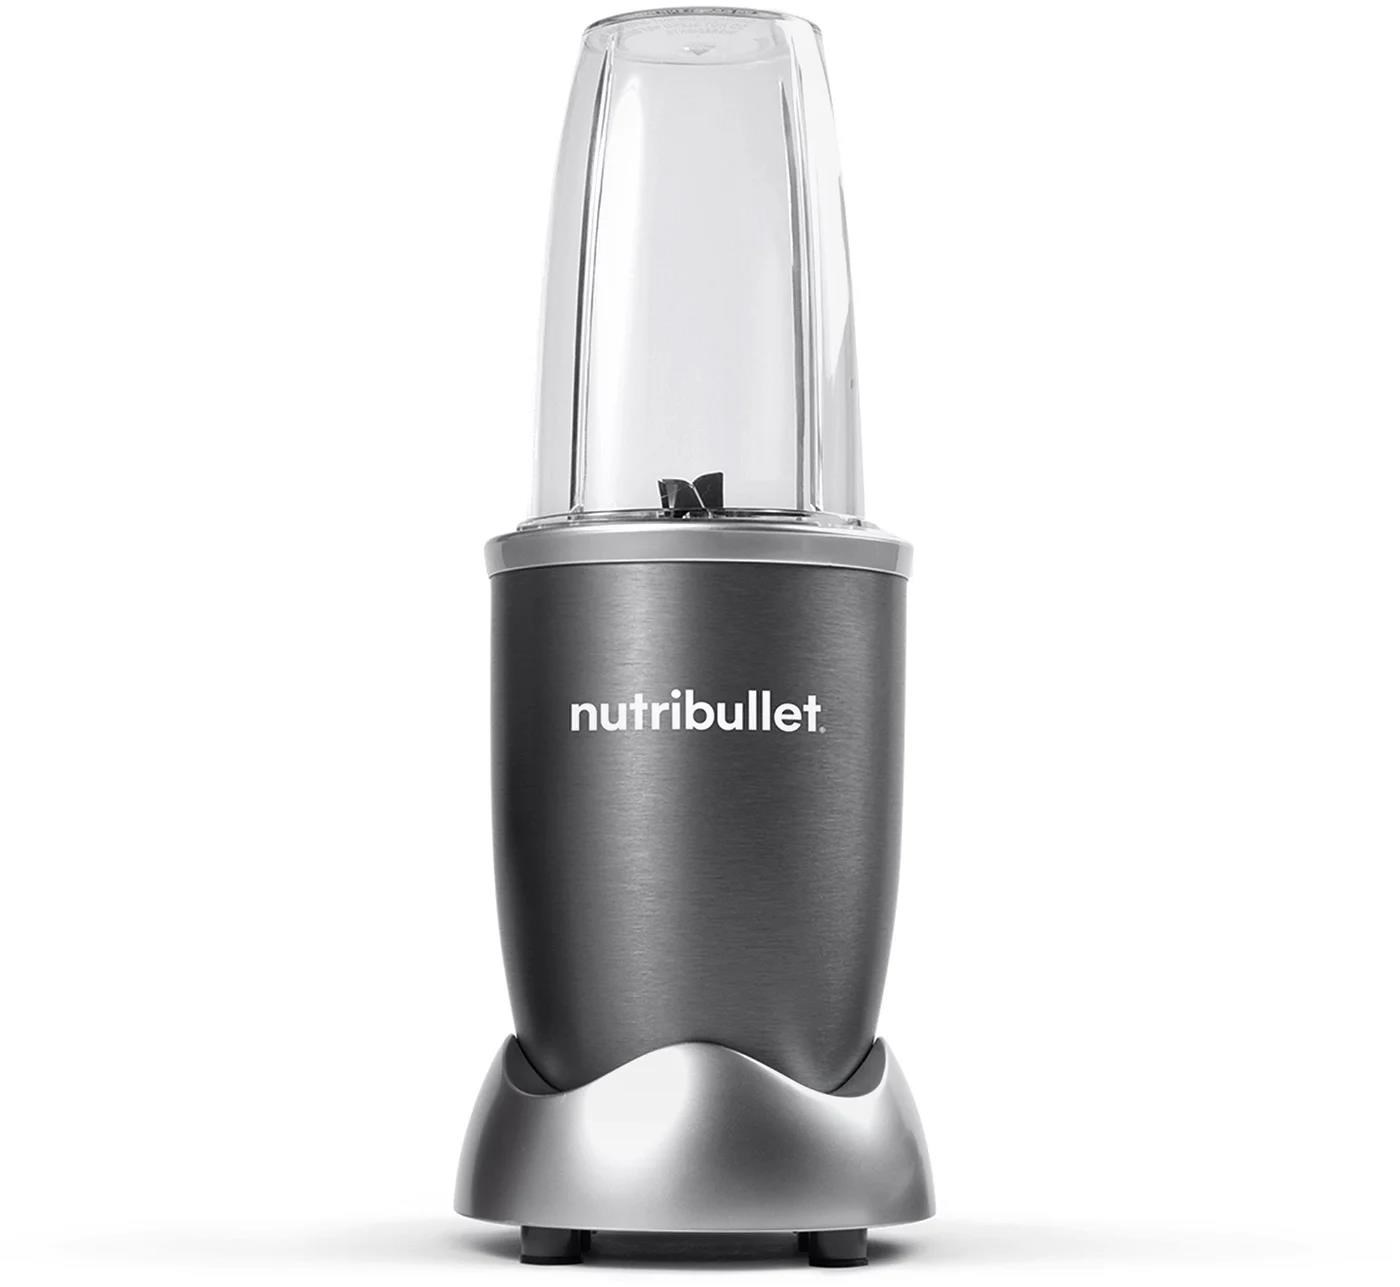 Nutribullet NB614DG stolní mixér, 600 W, 1 rychlost, 700 ml, tritan0 